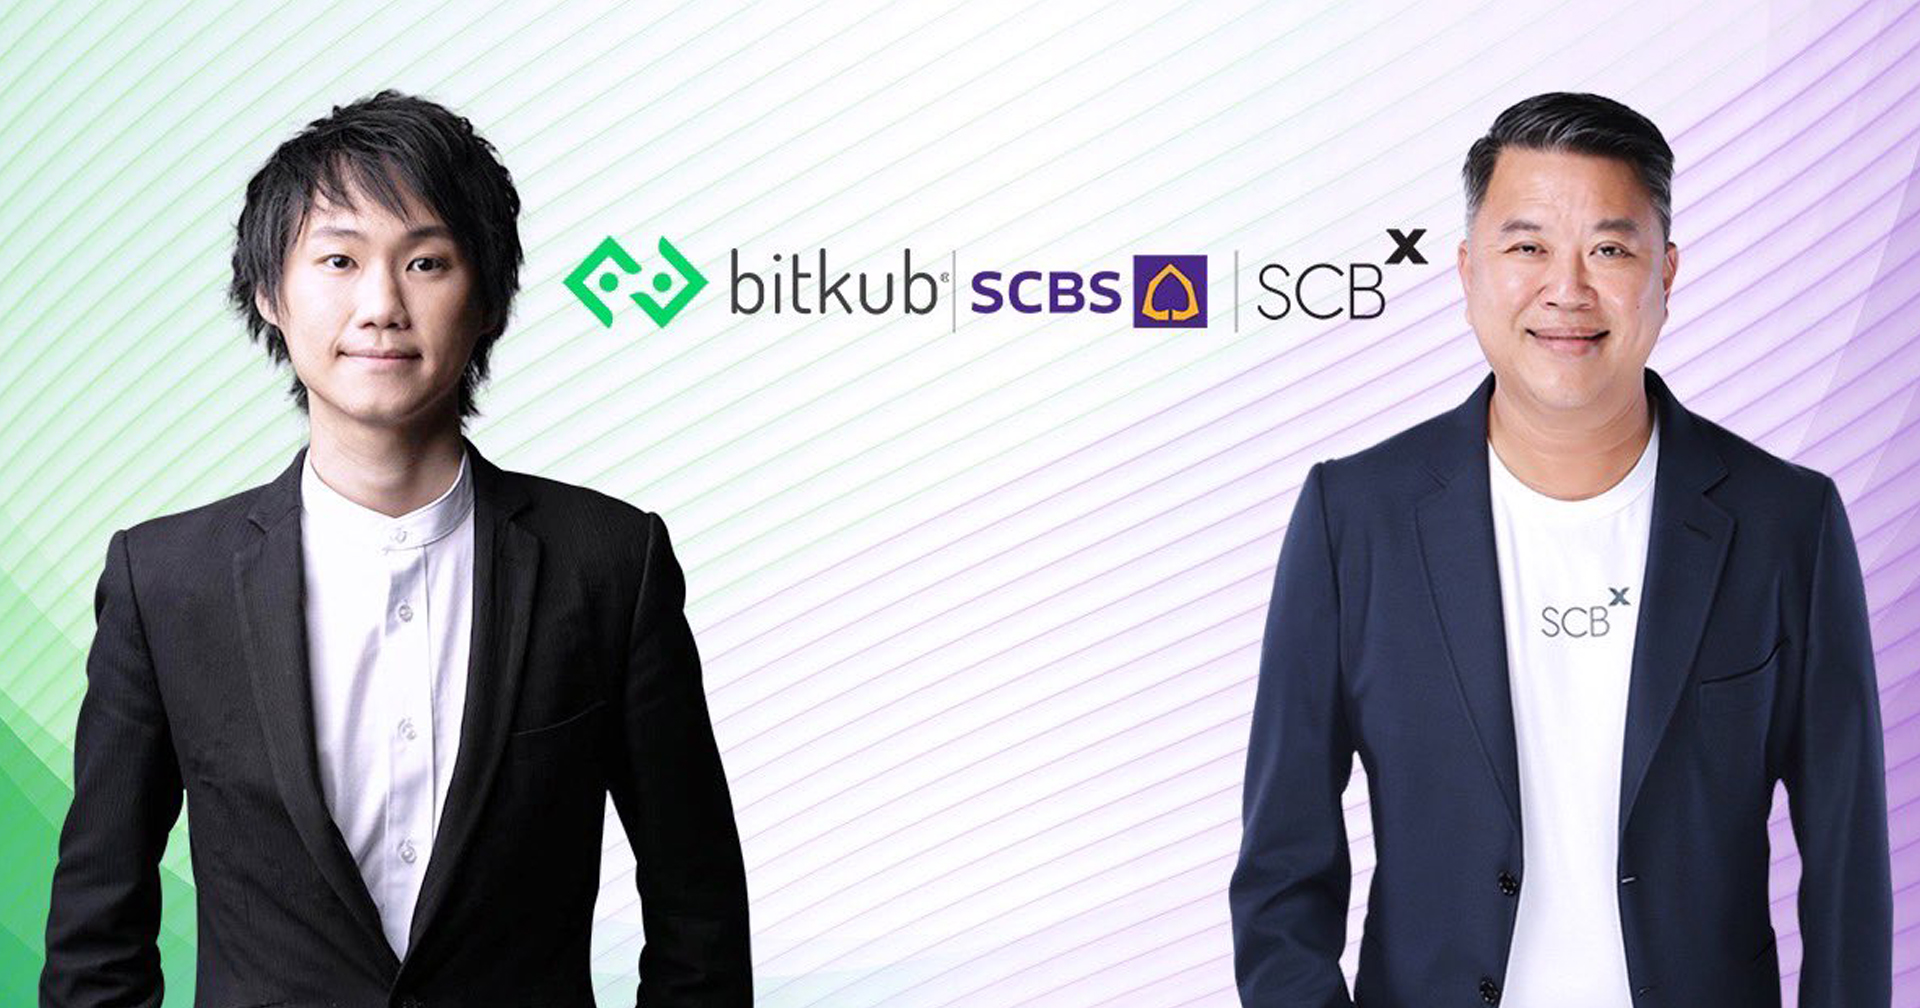 SCB ทุ่มเงินกว่า 17,800 ล้านบาท เข้าเป็นผู้ถือหุ้นใหญ่ Bitkub